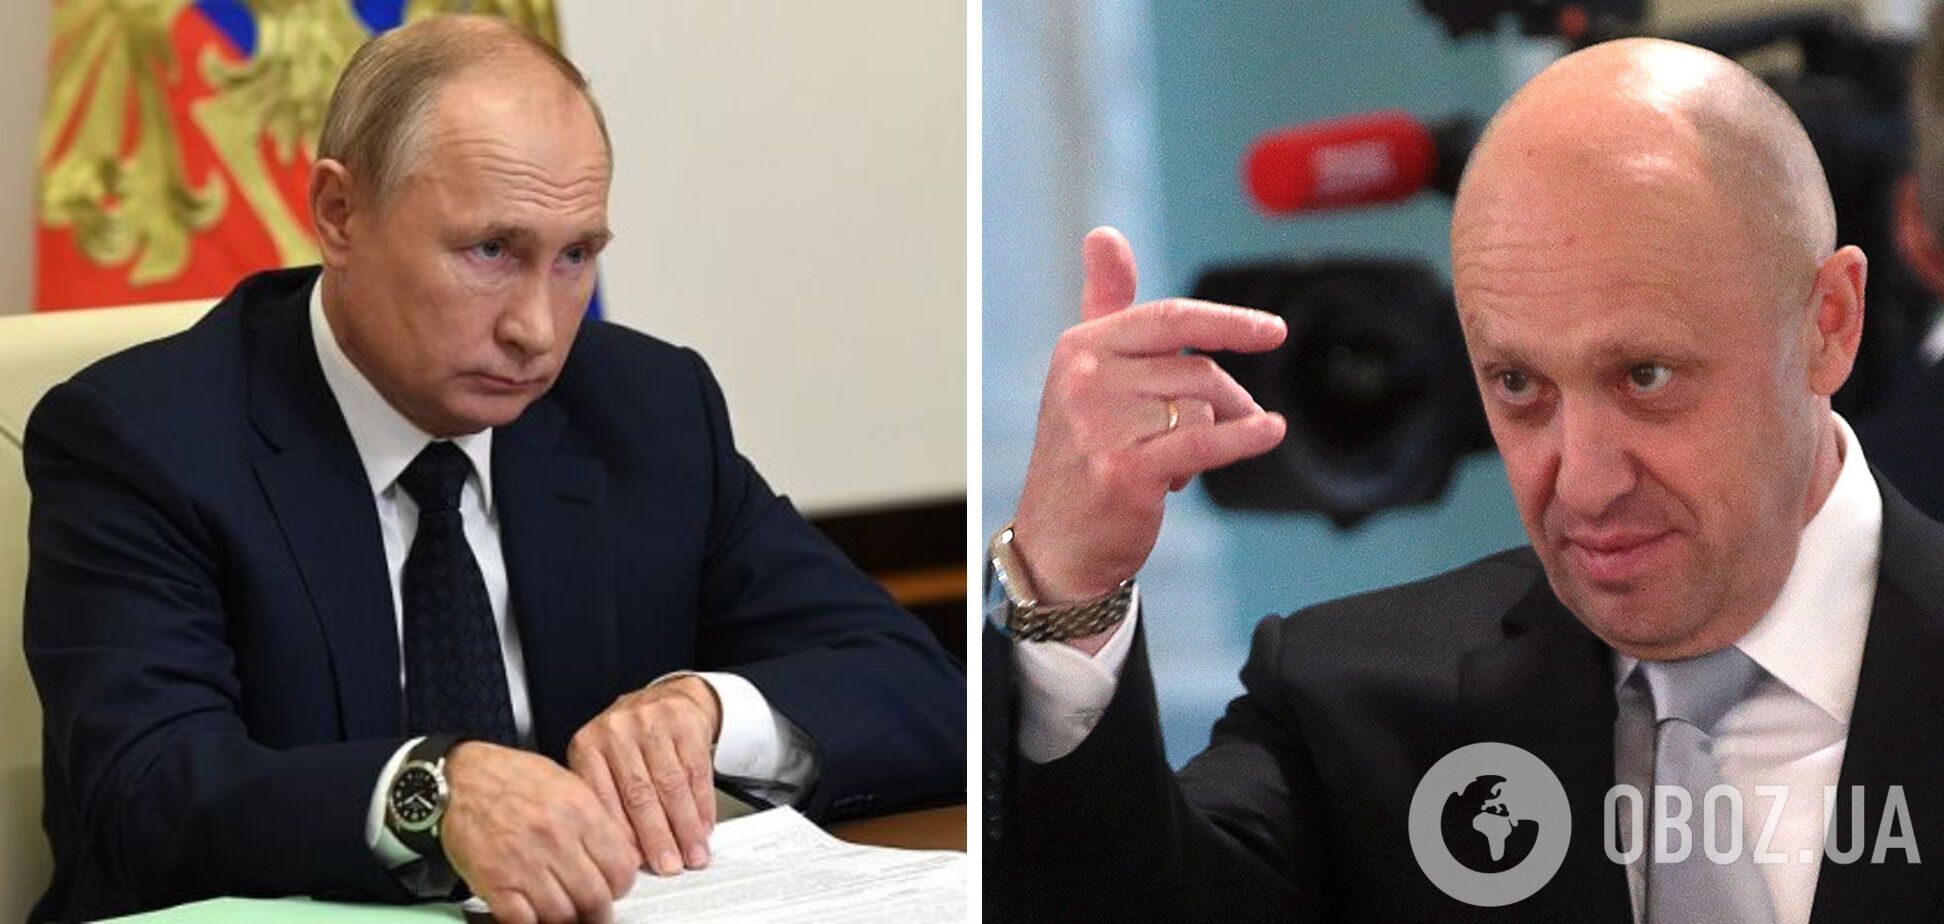 Пригожин затеял 'особую игру' против Путина